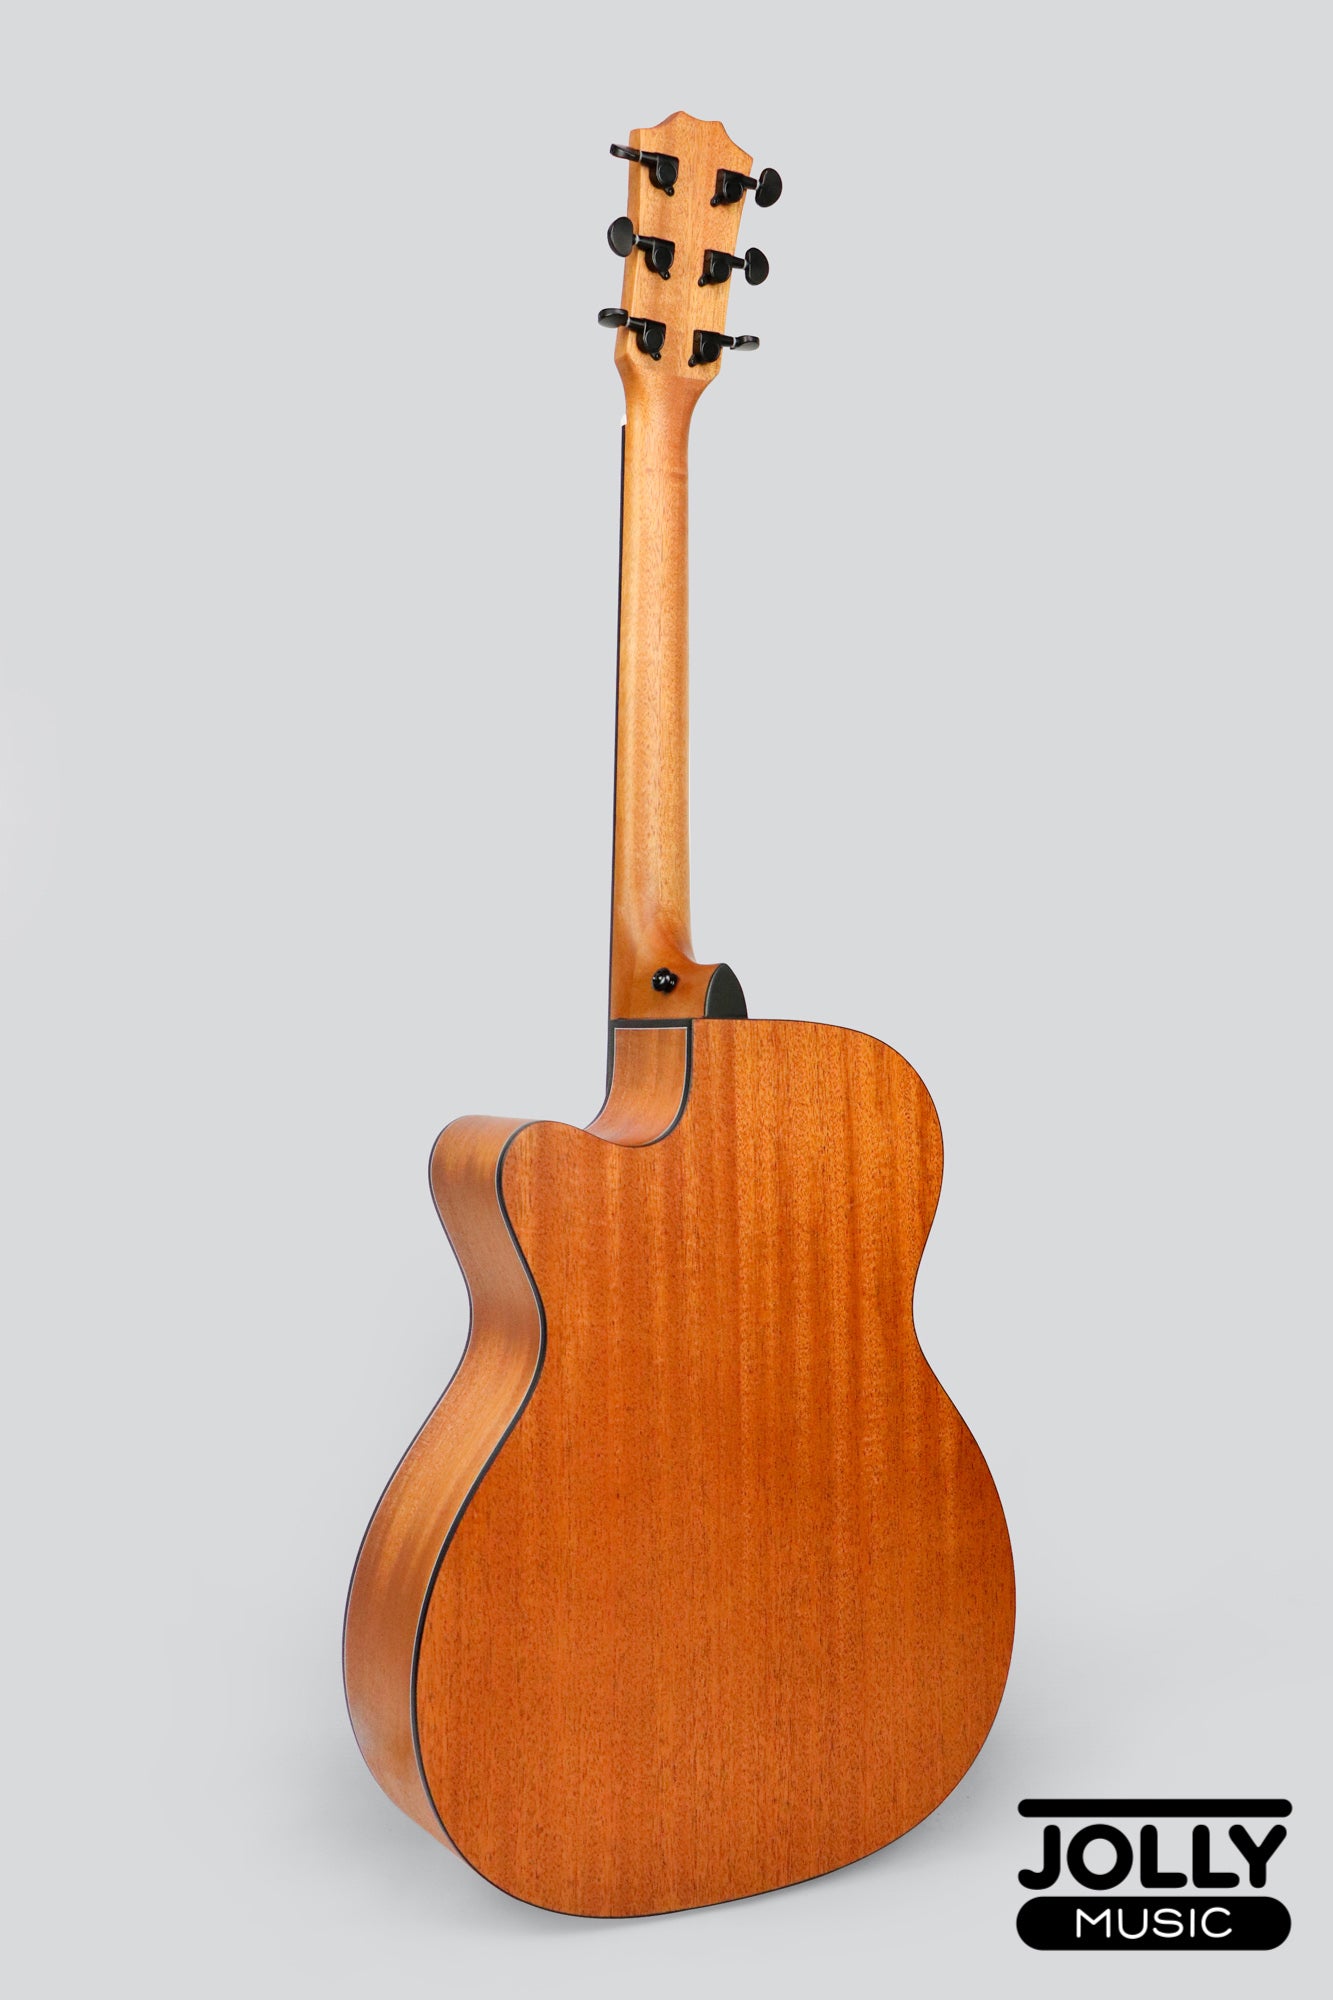 Phoebus Progeny PG-10c OM Acoustic Guitar w/ Gig Bag